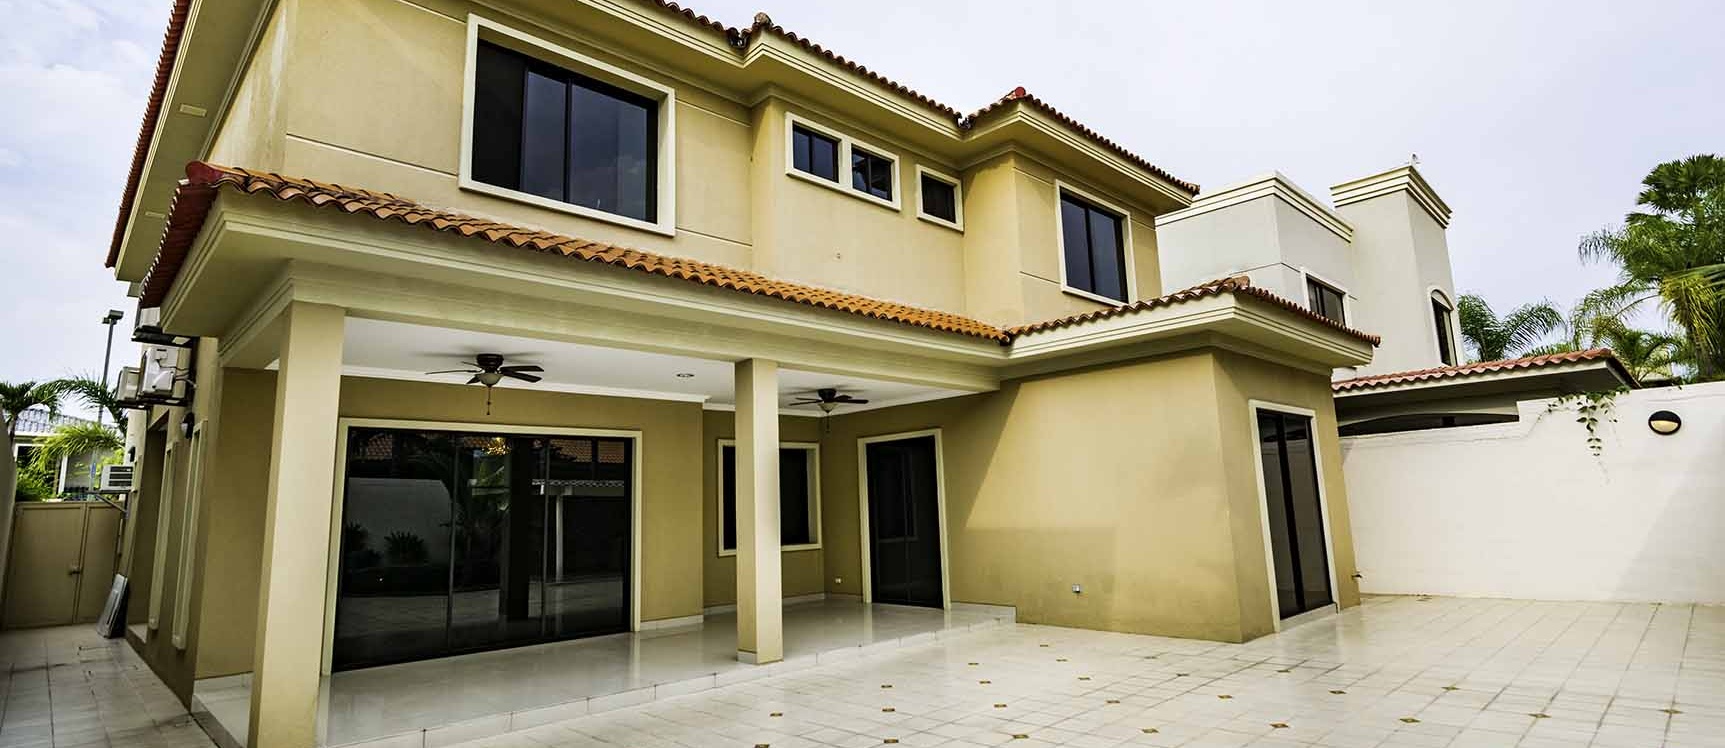 GeoBienes - Casa en venta Urb. Terrasol, Vía Samborondón  - Plusvalia Guayaquil Casas de venta y alquiler Inmobiliaria Ecuador